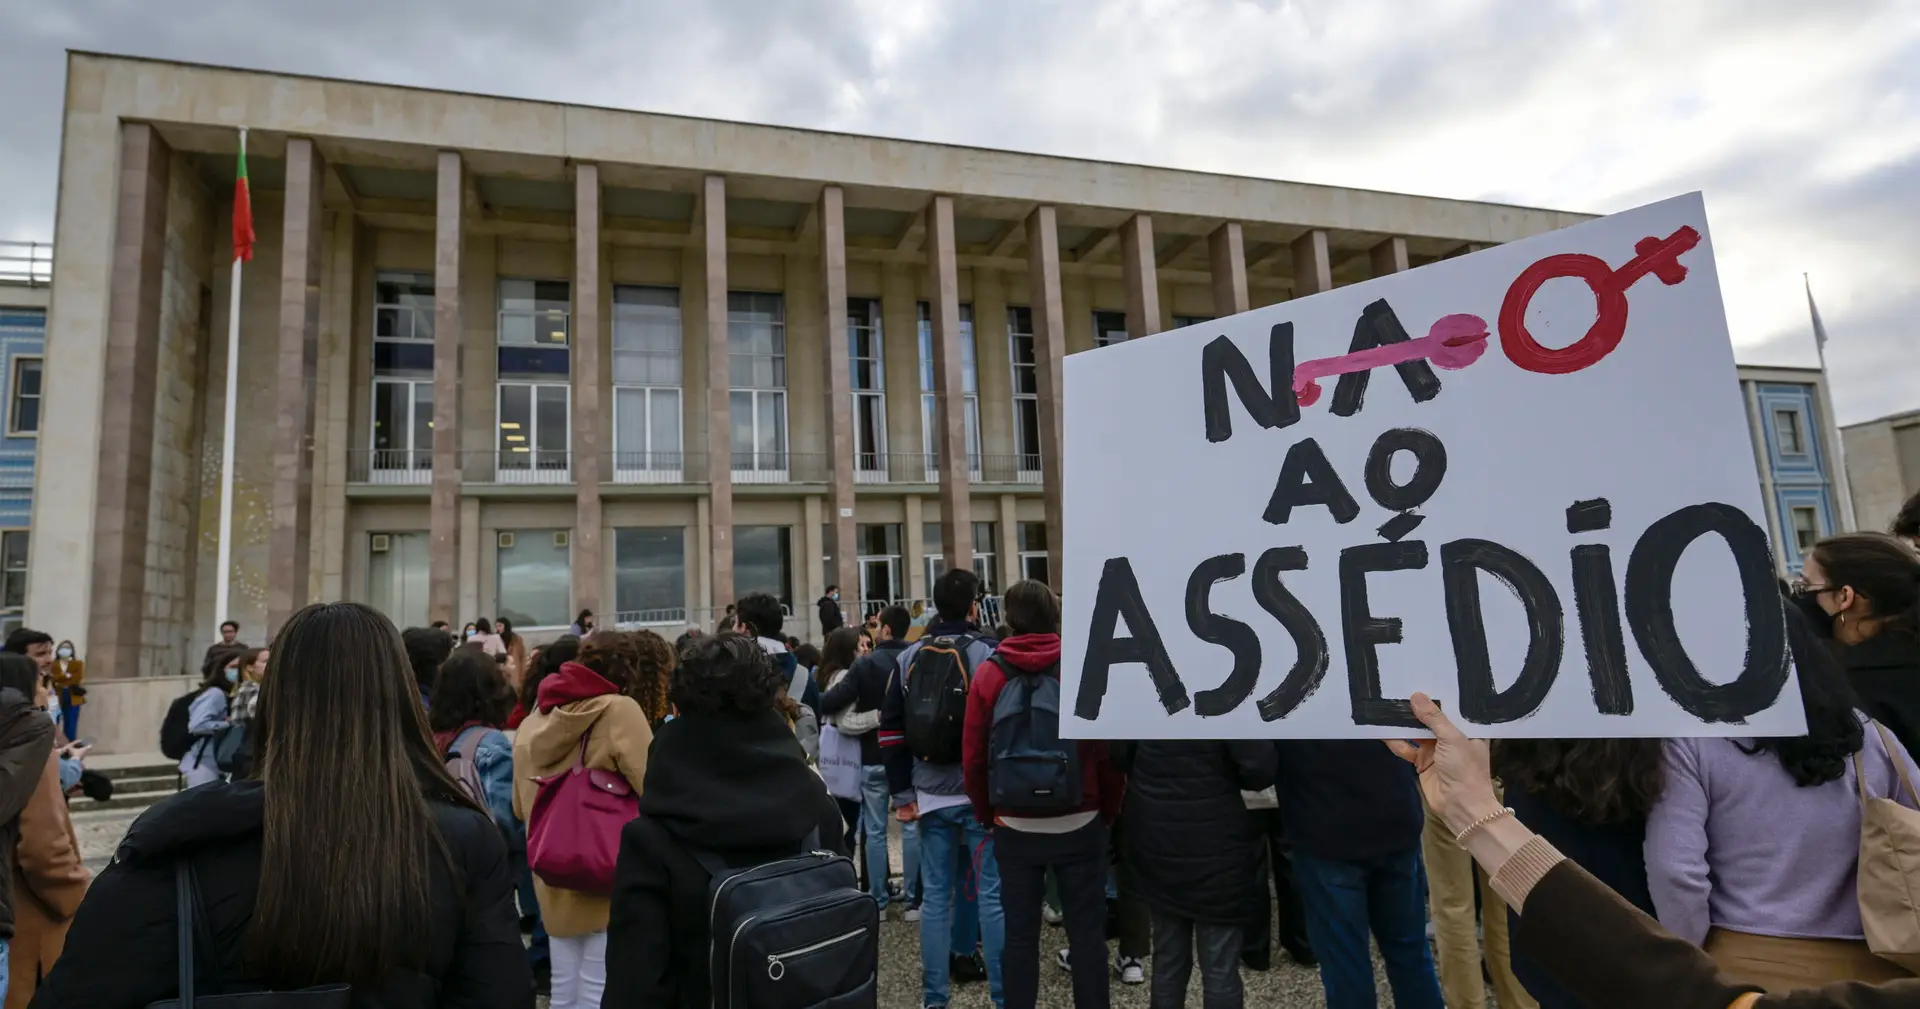 Suspeitas de assédio na Universidade de Lisboa: testemunhas ameaçadas com revelação de identidade